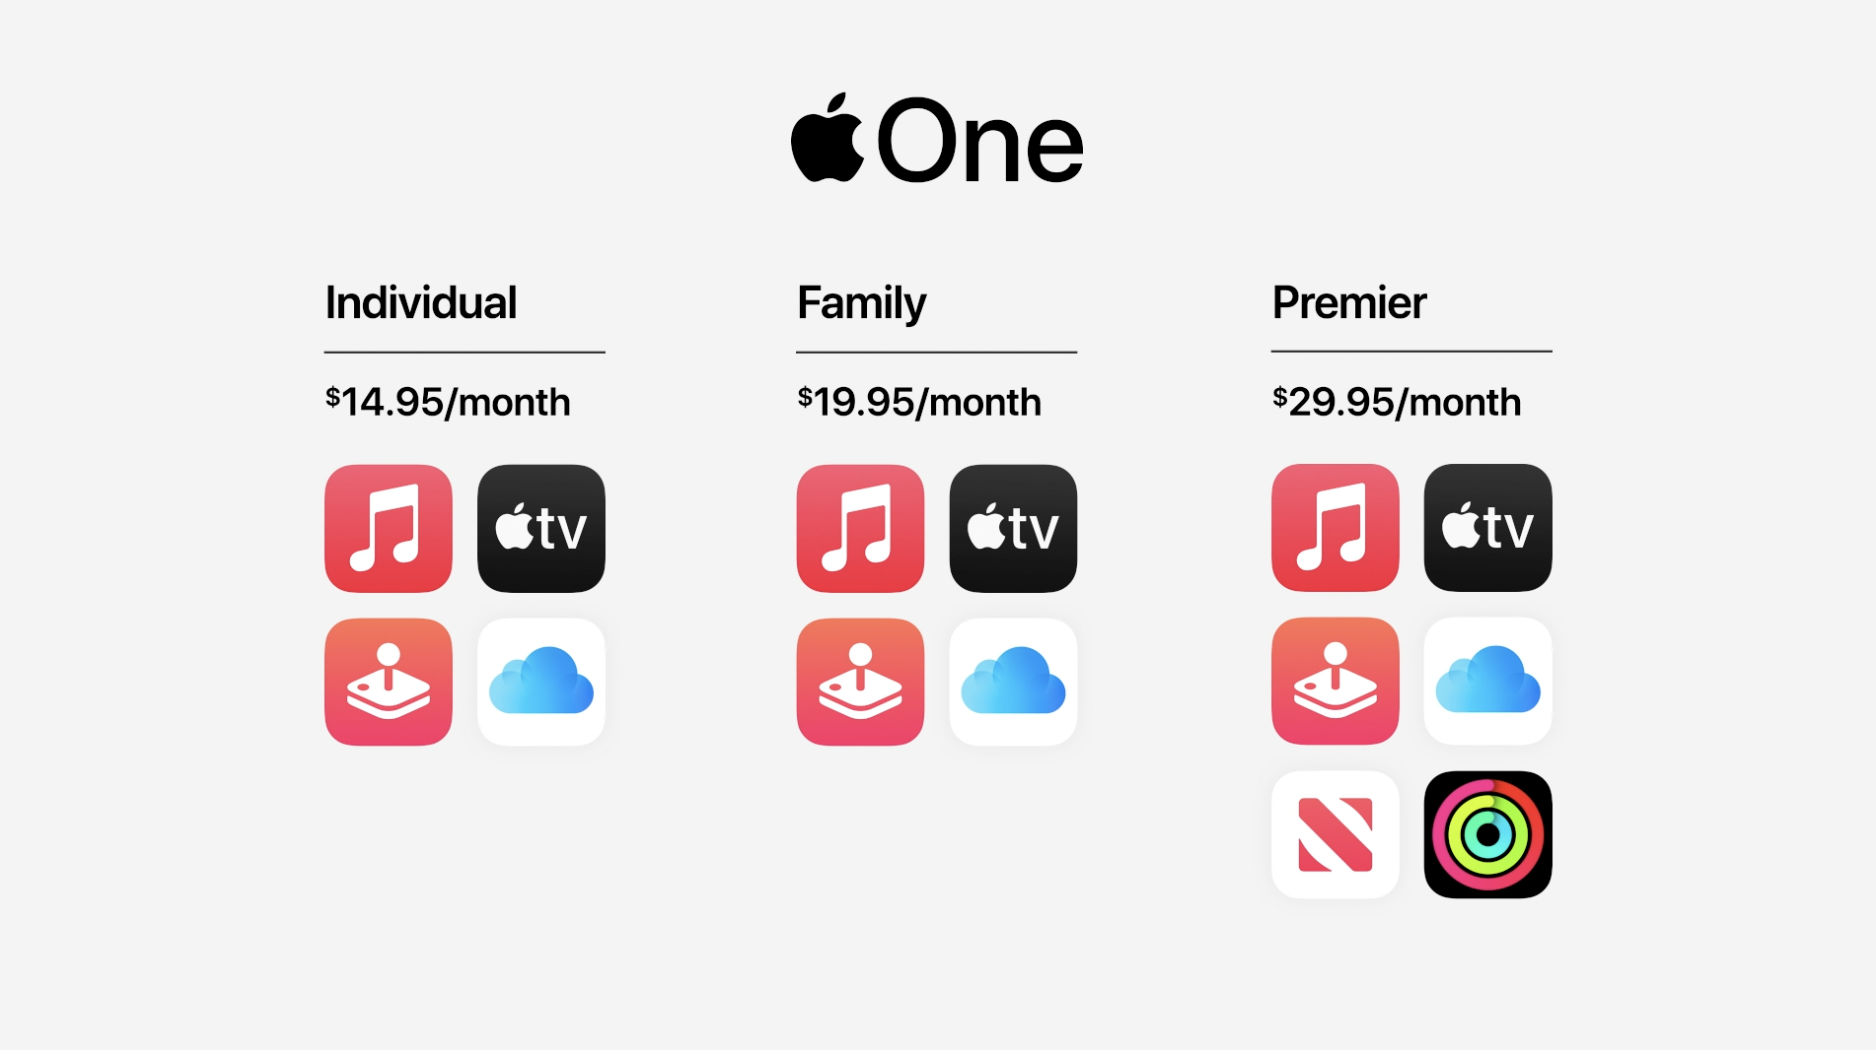 蘋果發表了『 Apple One 』訂閱服務組合包 Apple Music、TV+、Arcade、iCloud 一次訂閱每個月省 205 台幣